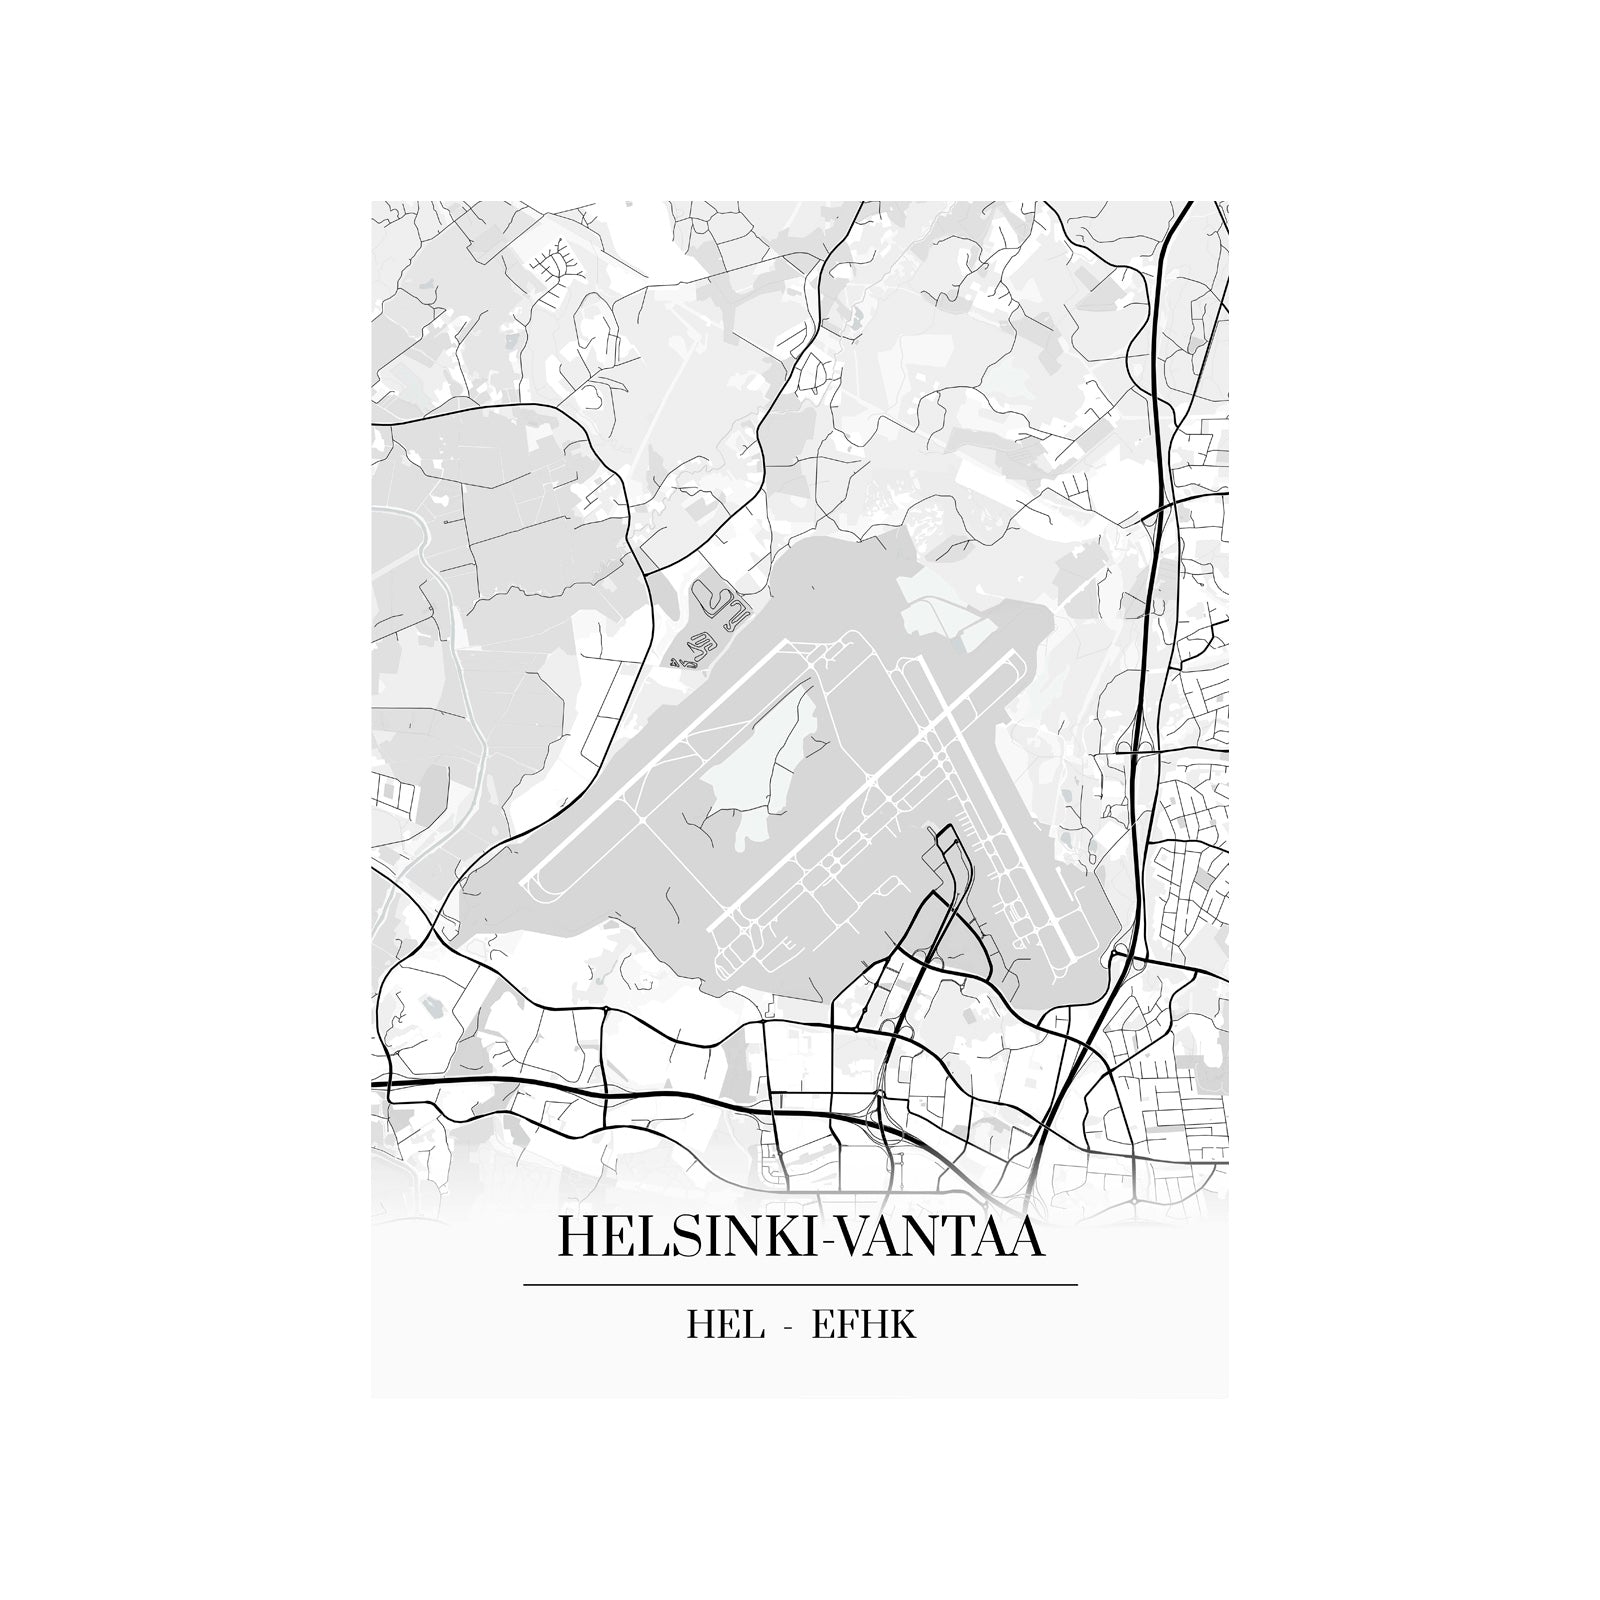 Helsinki-Vantaa